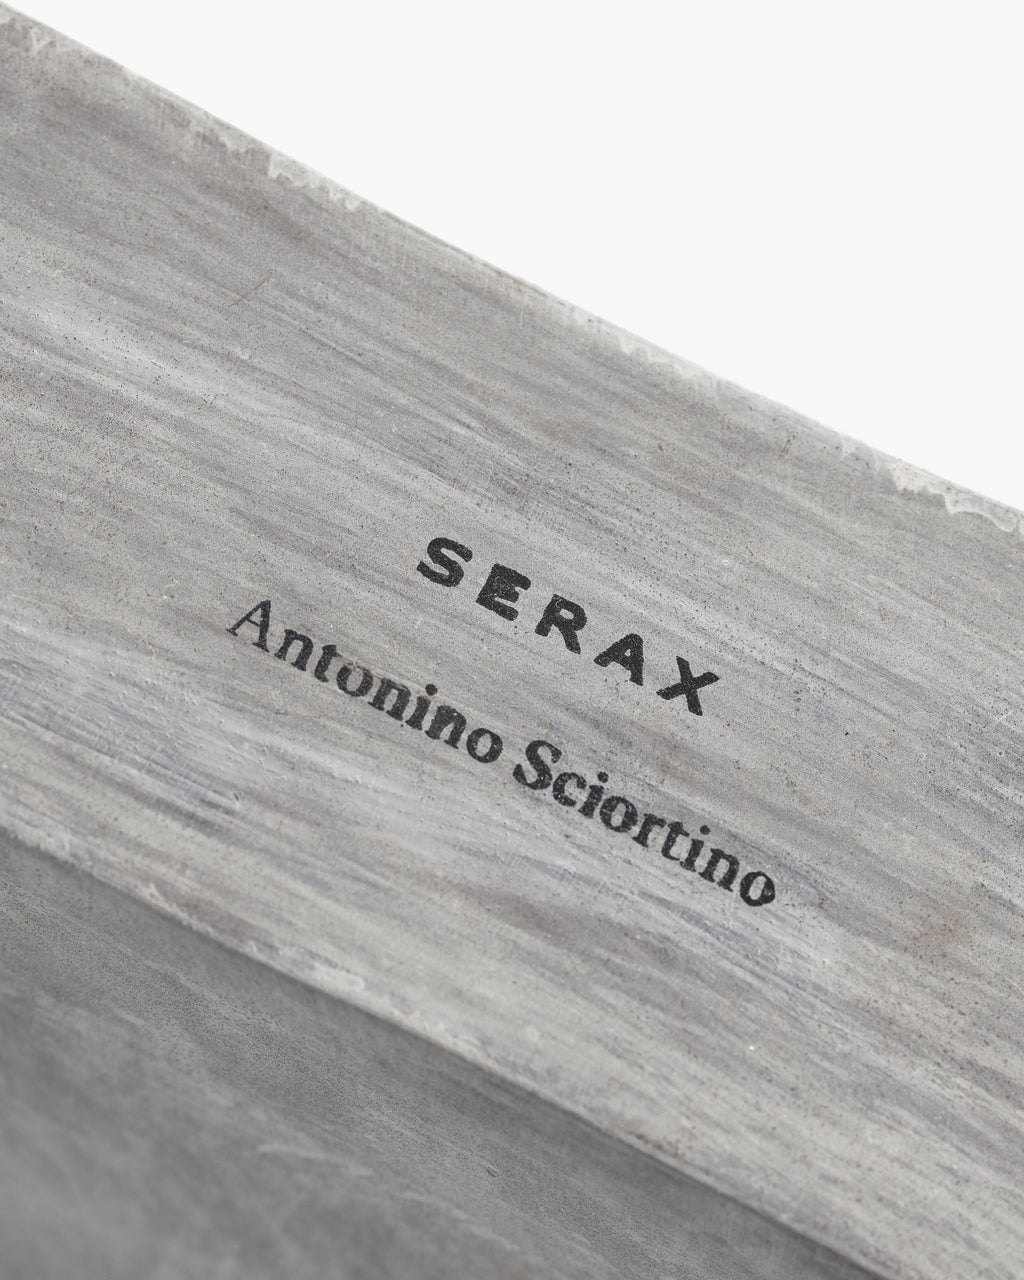 B7224201-001 Serax Antonino Sciortino